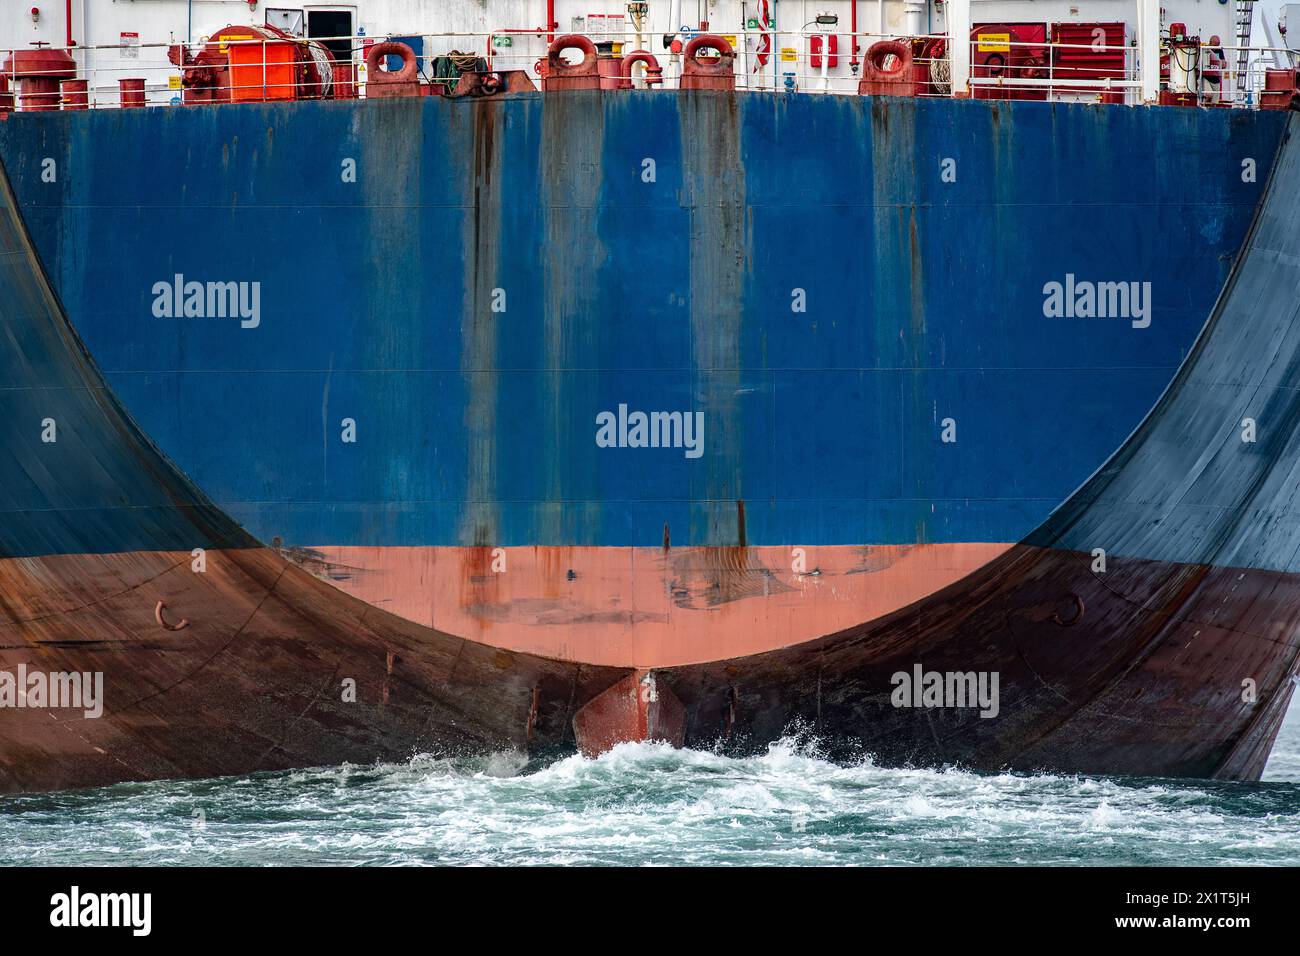 Große blaue Containerschiffe mit Ruder schieben eine riesige Welle durch den Ozean. Stockfoto